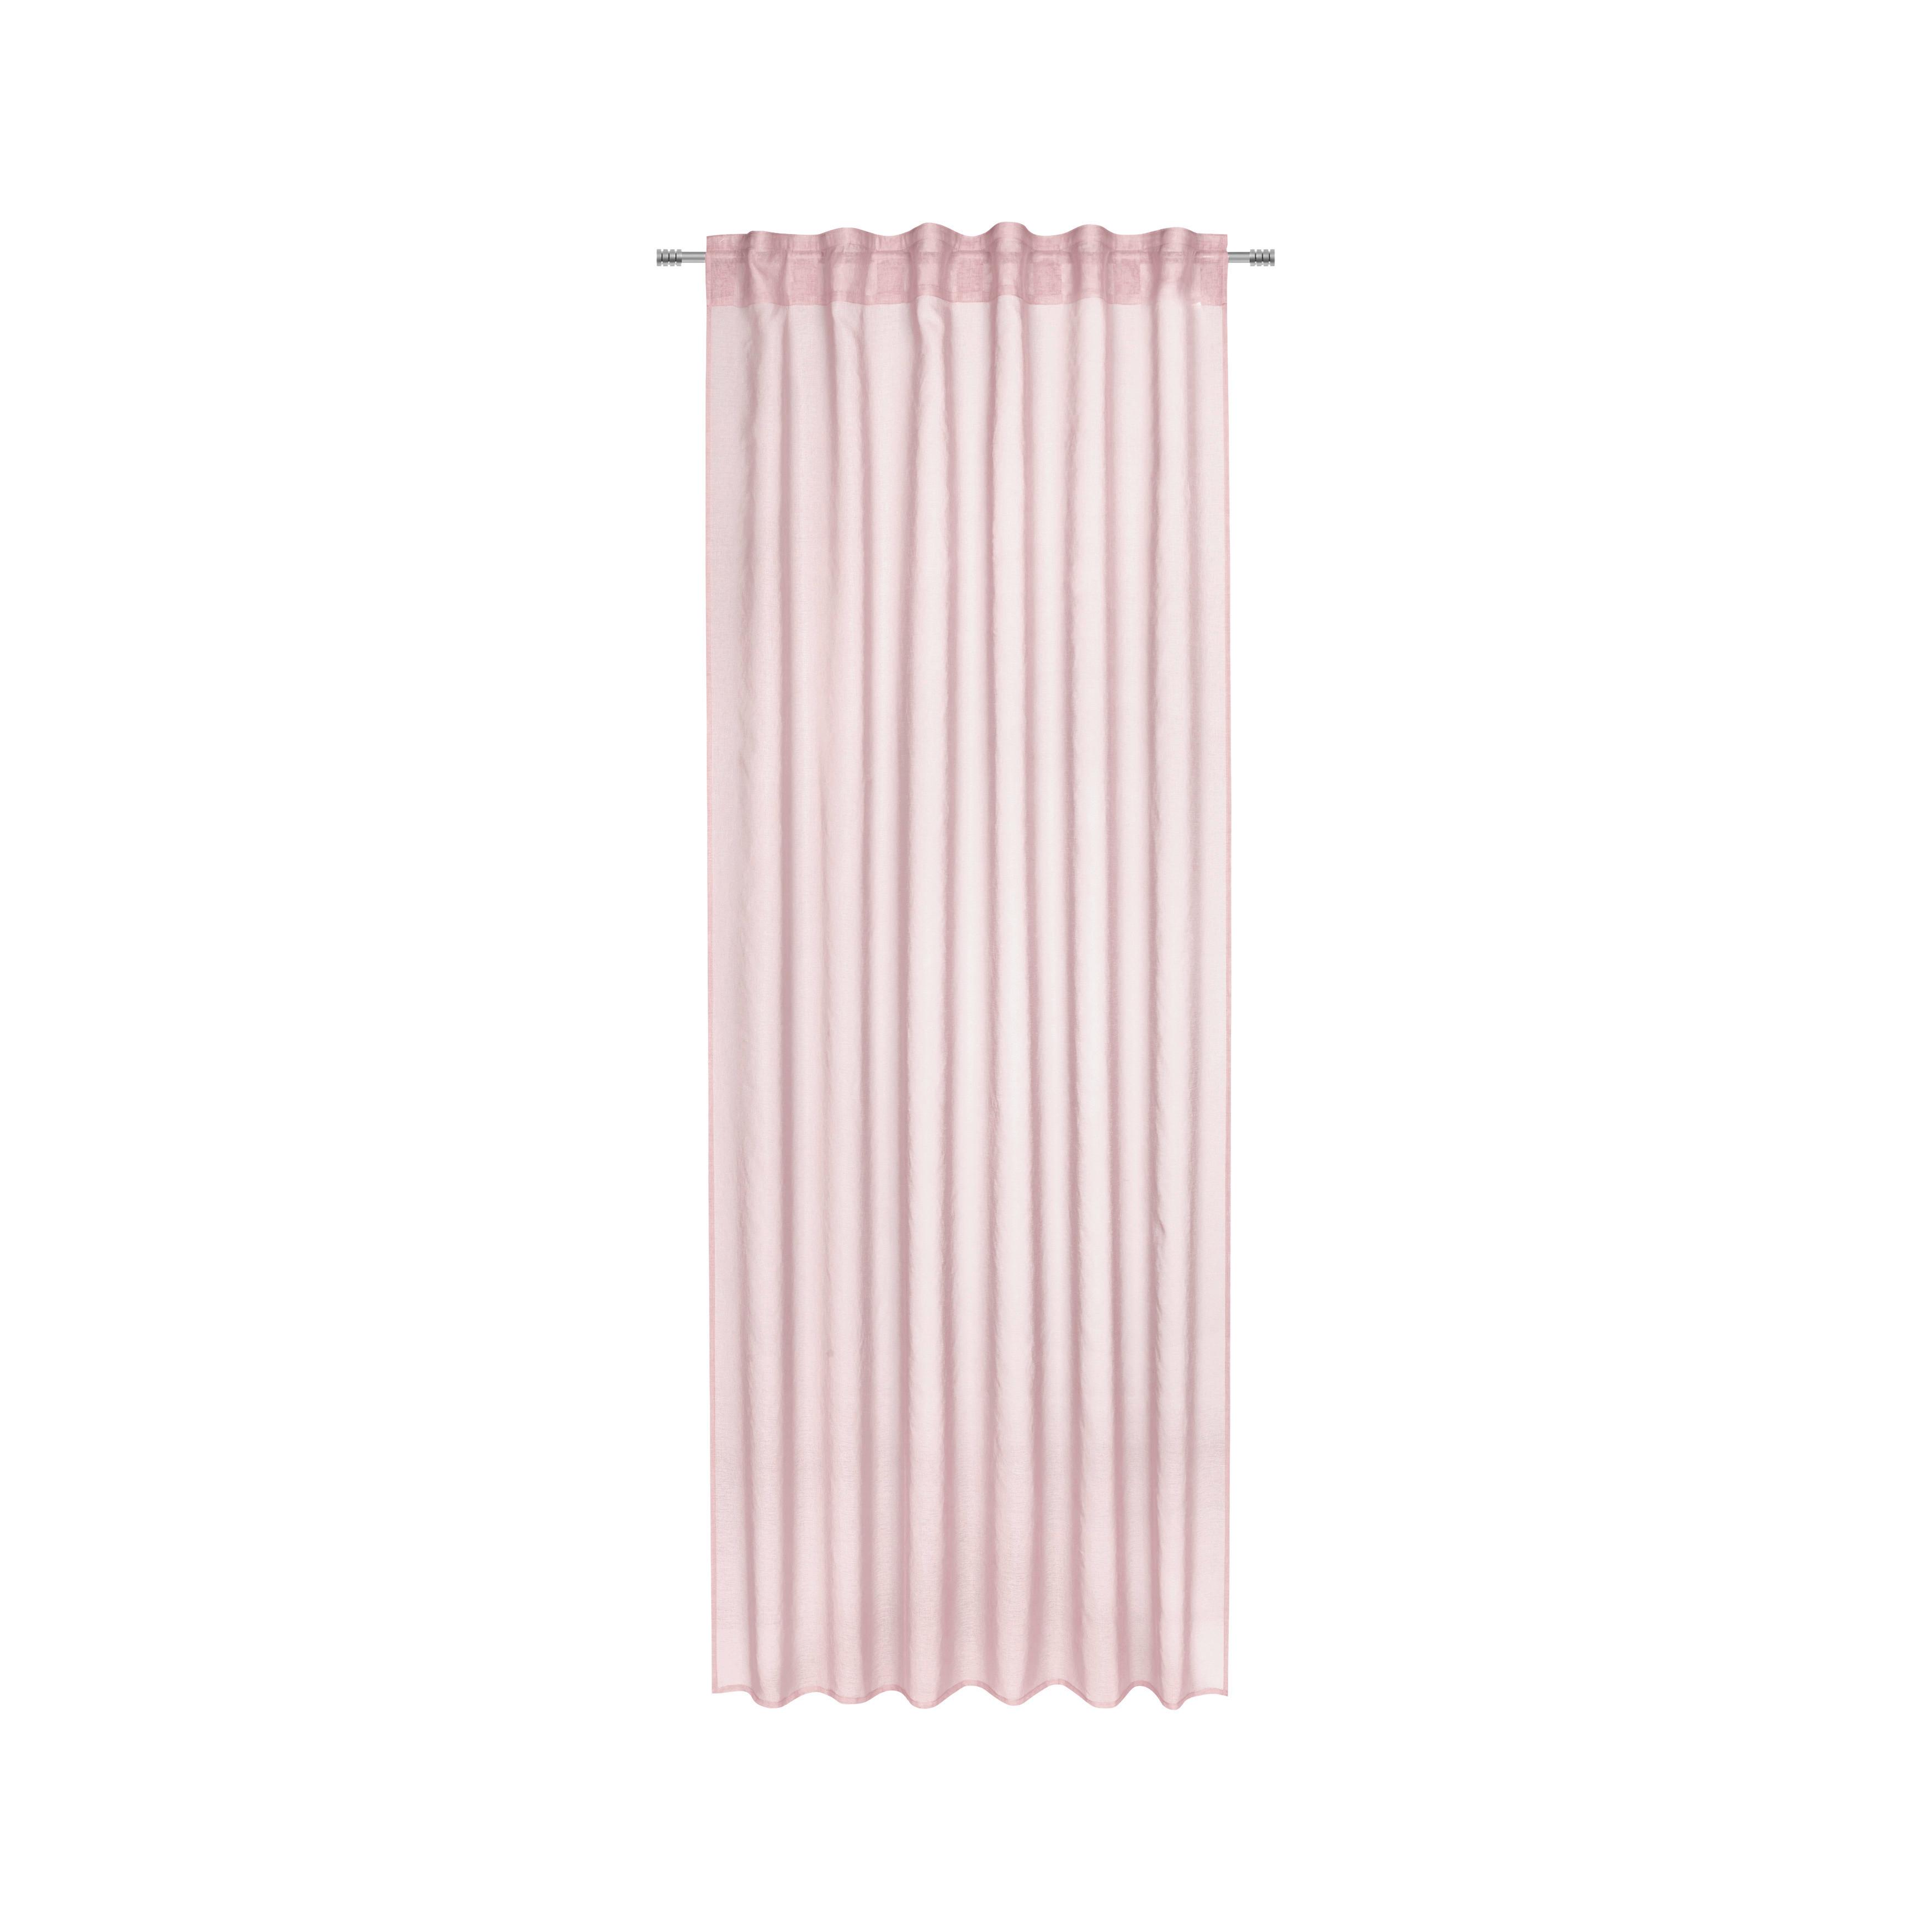 Hotový Závěs Tosca, 2x140/245cm, Růžová - starorůžová, textil (140/245cm) - Modern Living